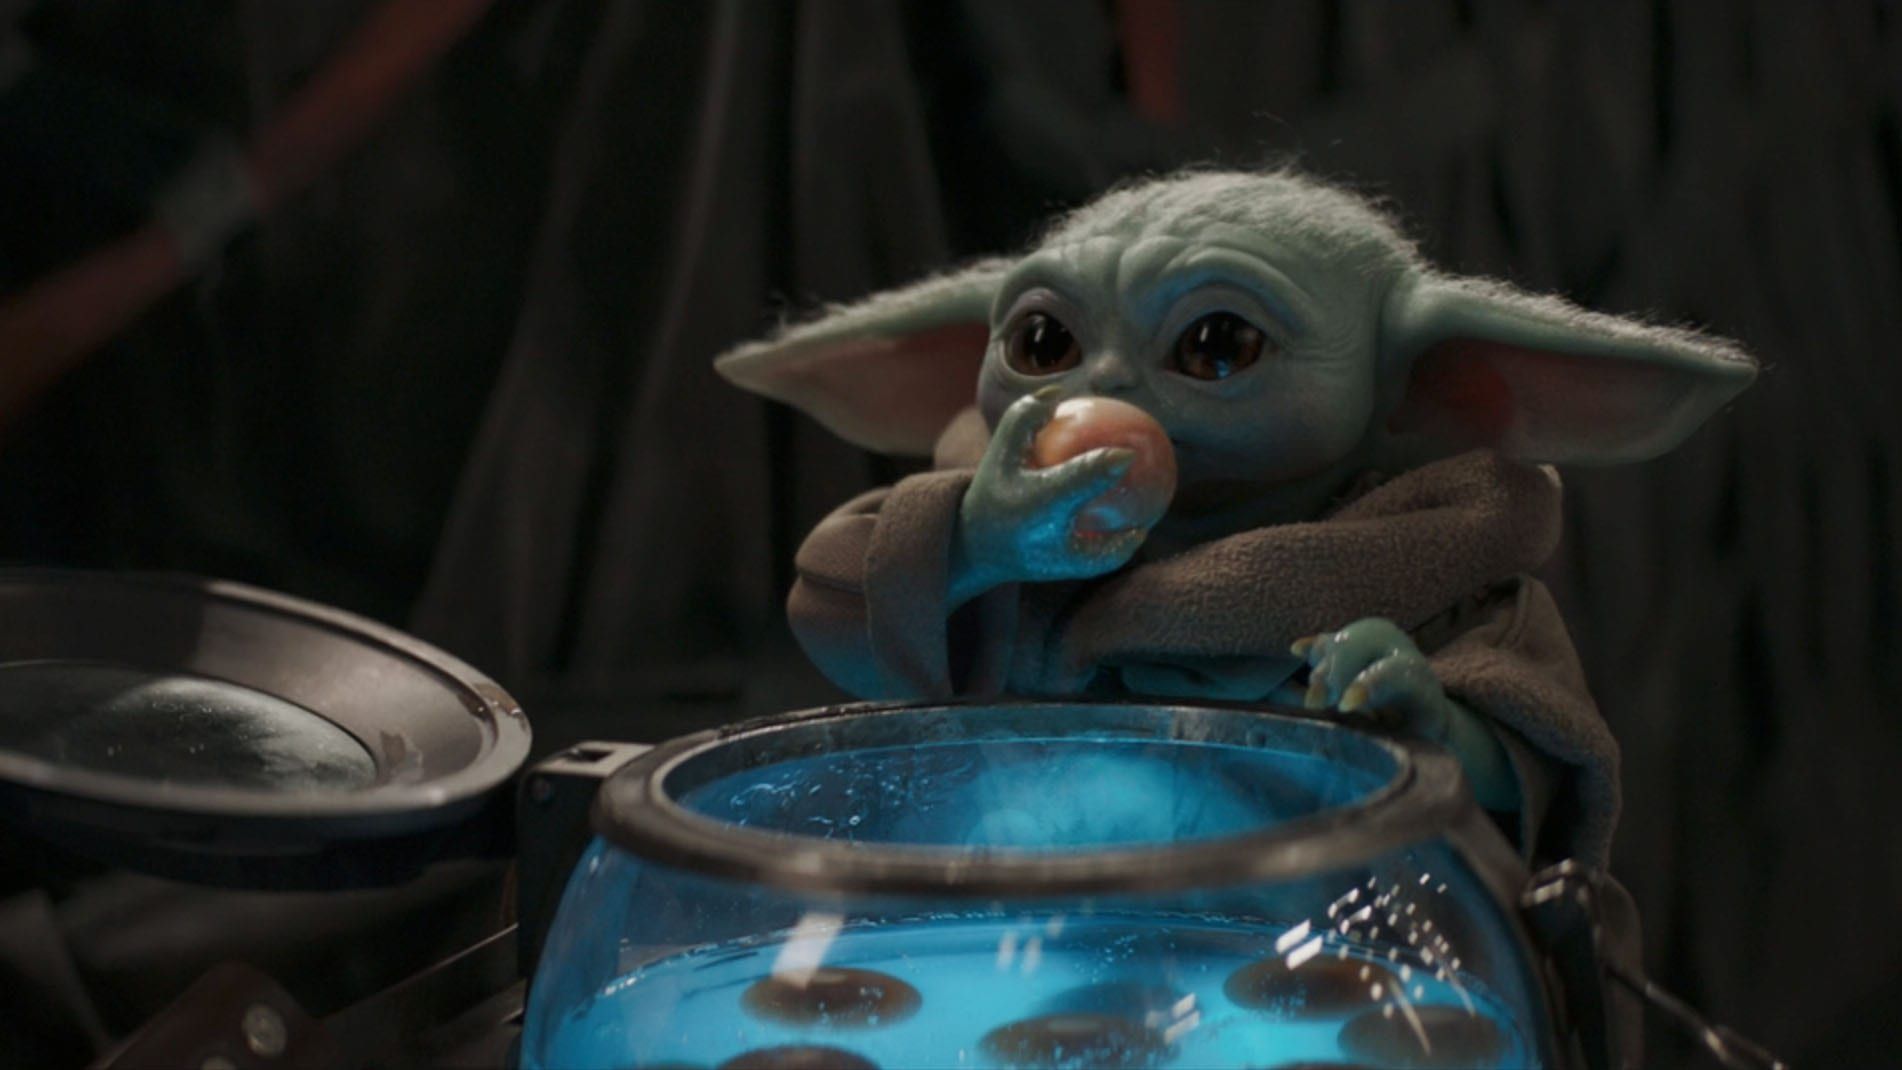 الطفل في فيلم 'Mandalorian' لا يزال طفلًا (Yoda) ويقوم بأشياء أطفال (Yoda)